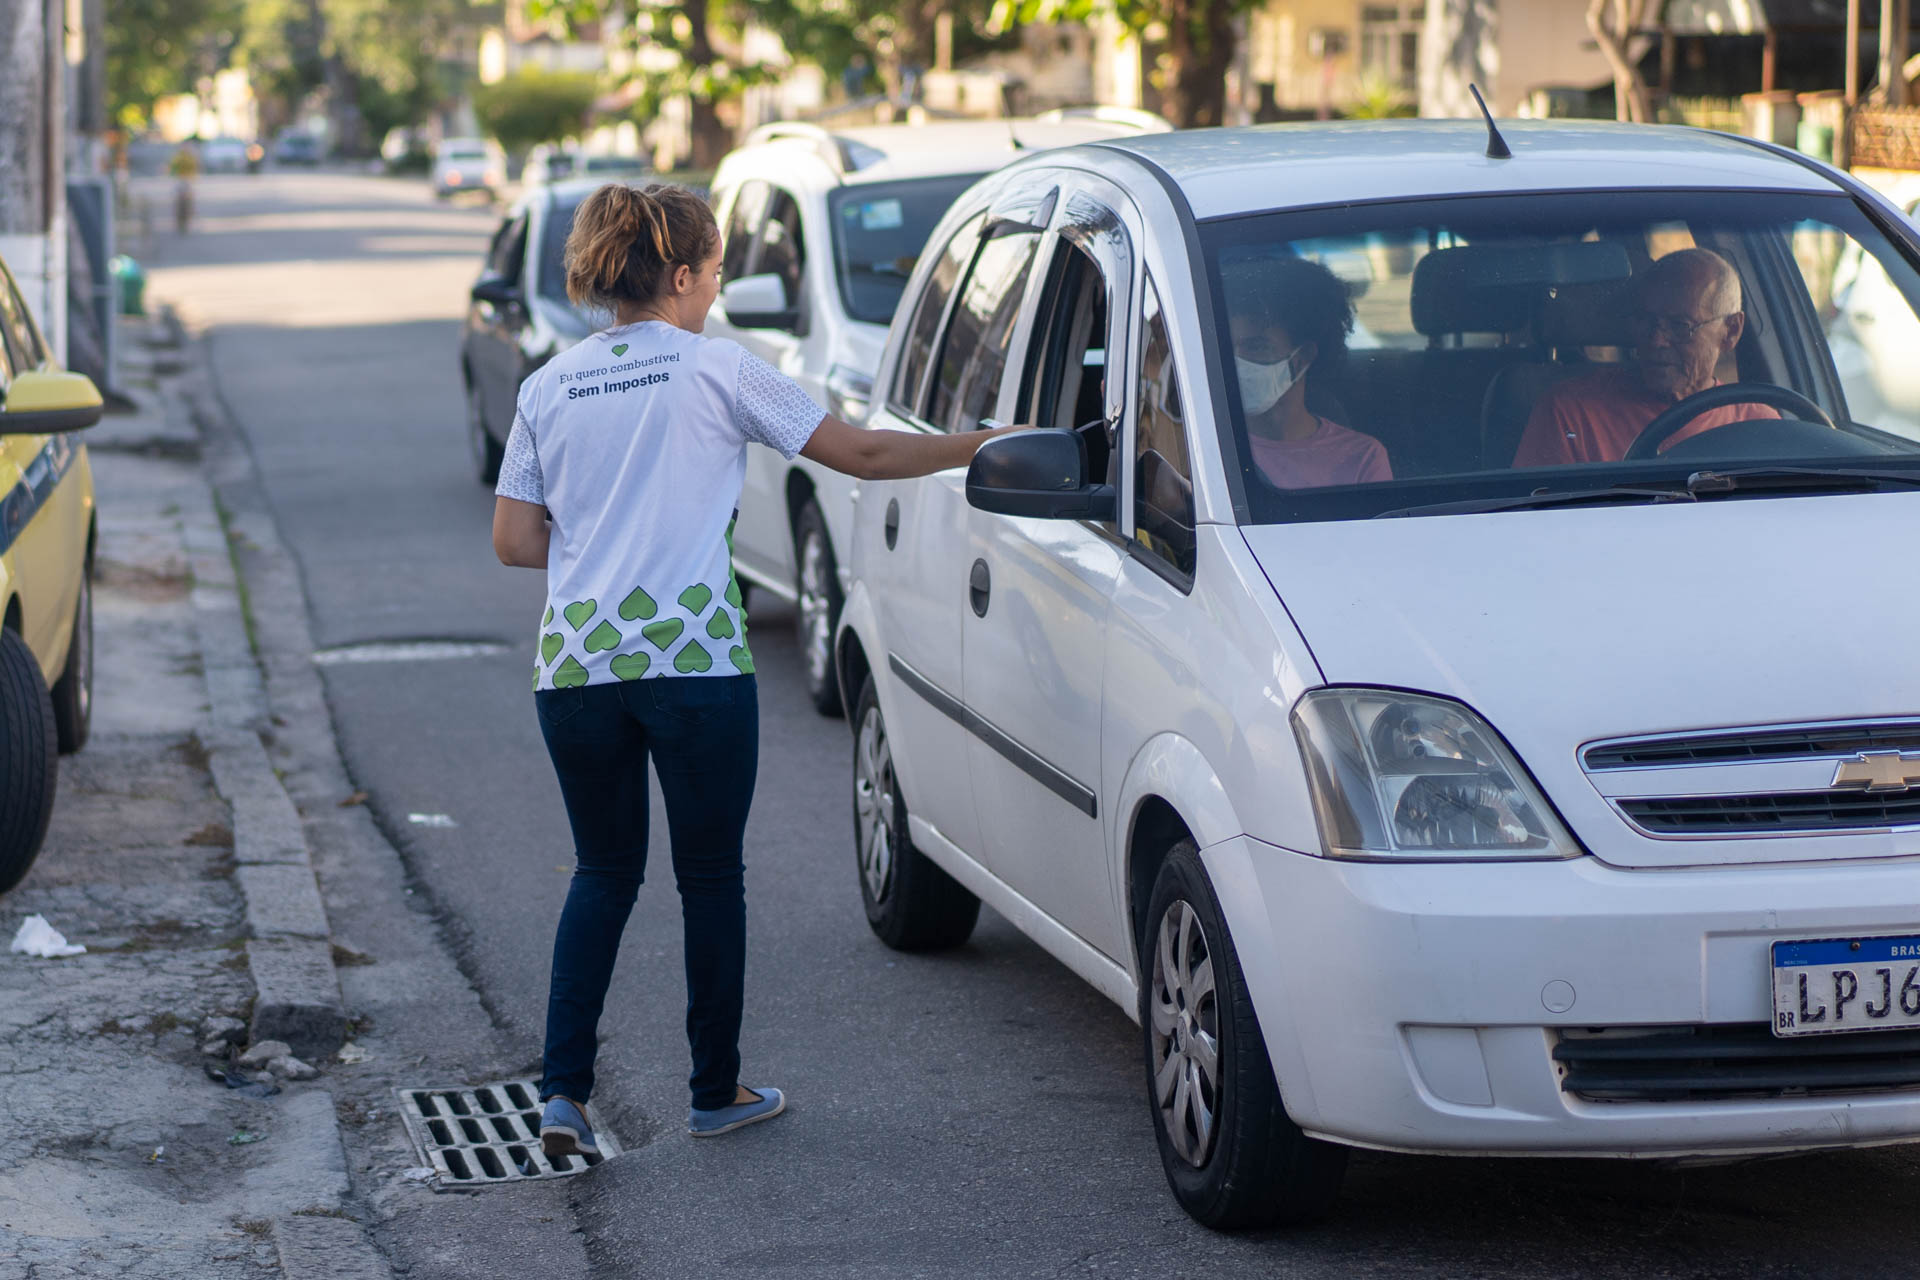 Ativista em Panfletagem para um carro branco - 